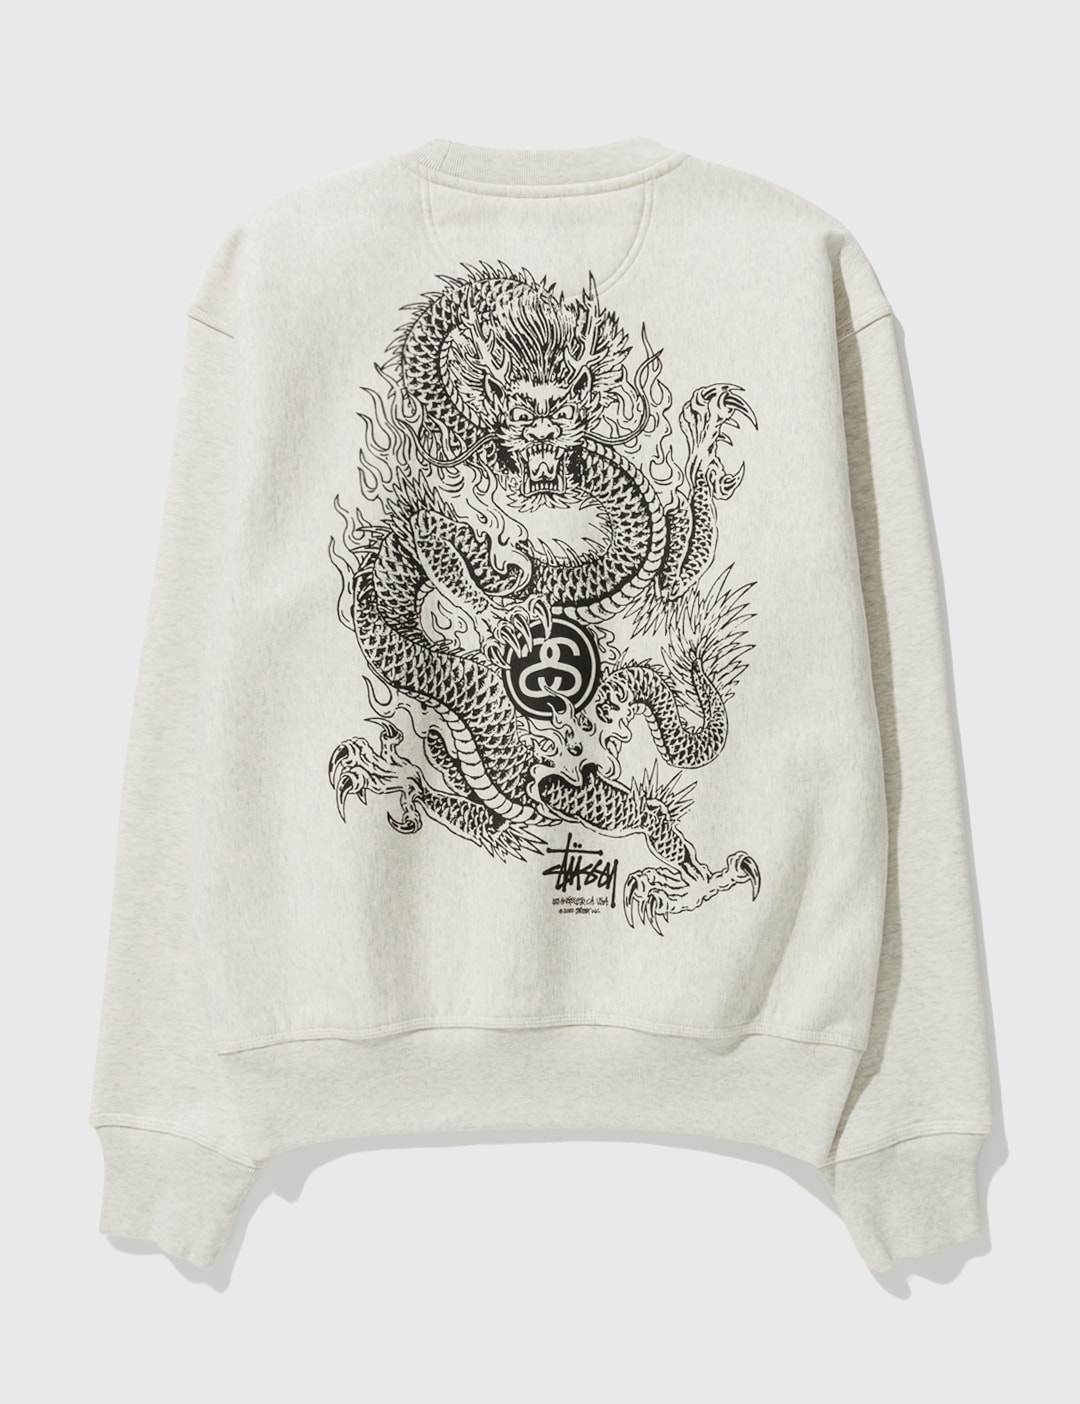 Stüssy - Dragon Crewneck Sweatshirt | HBX - Globally Curated Fashion ...